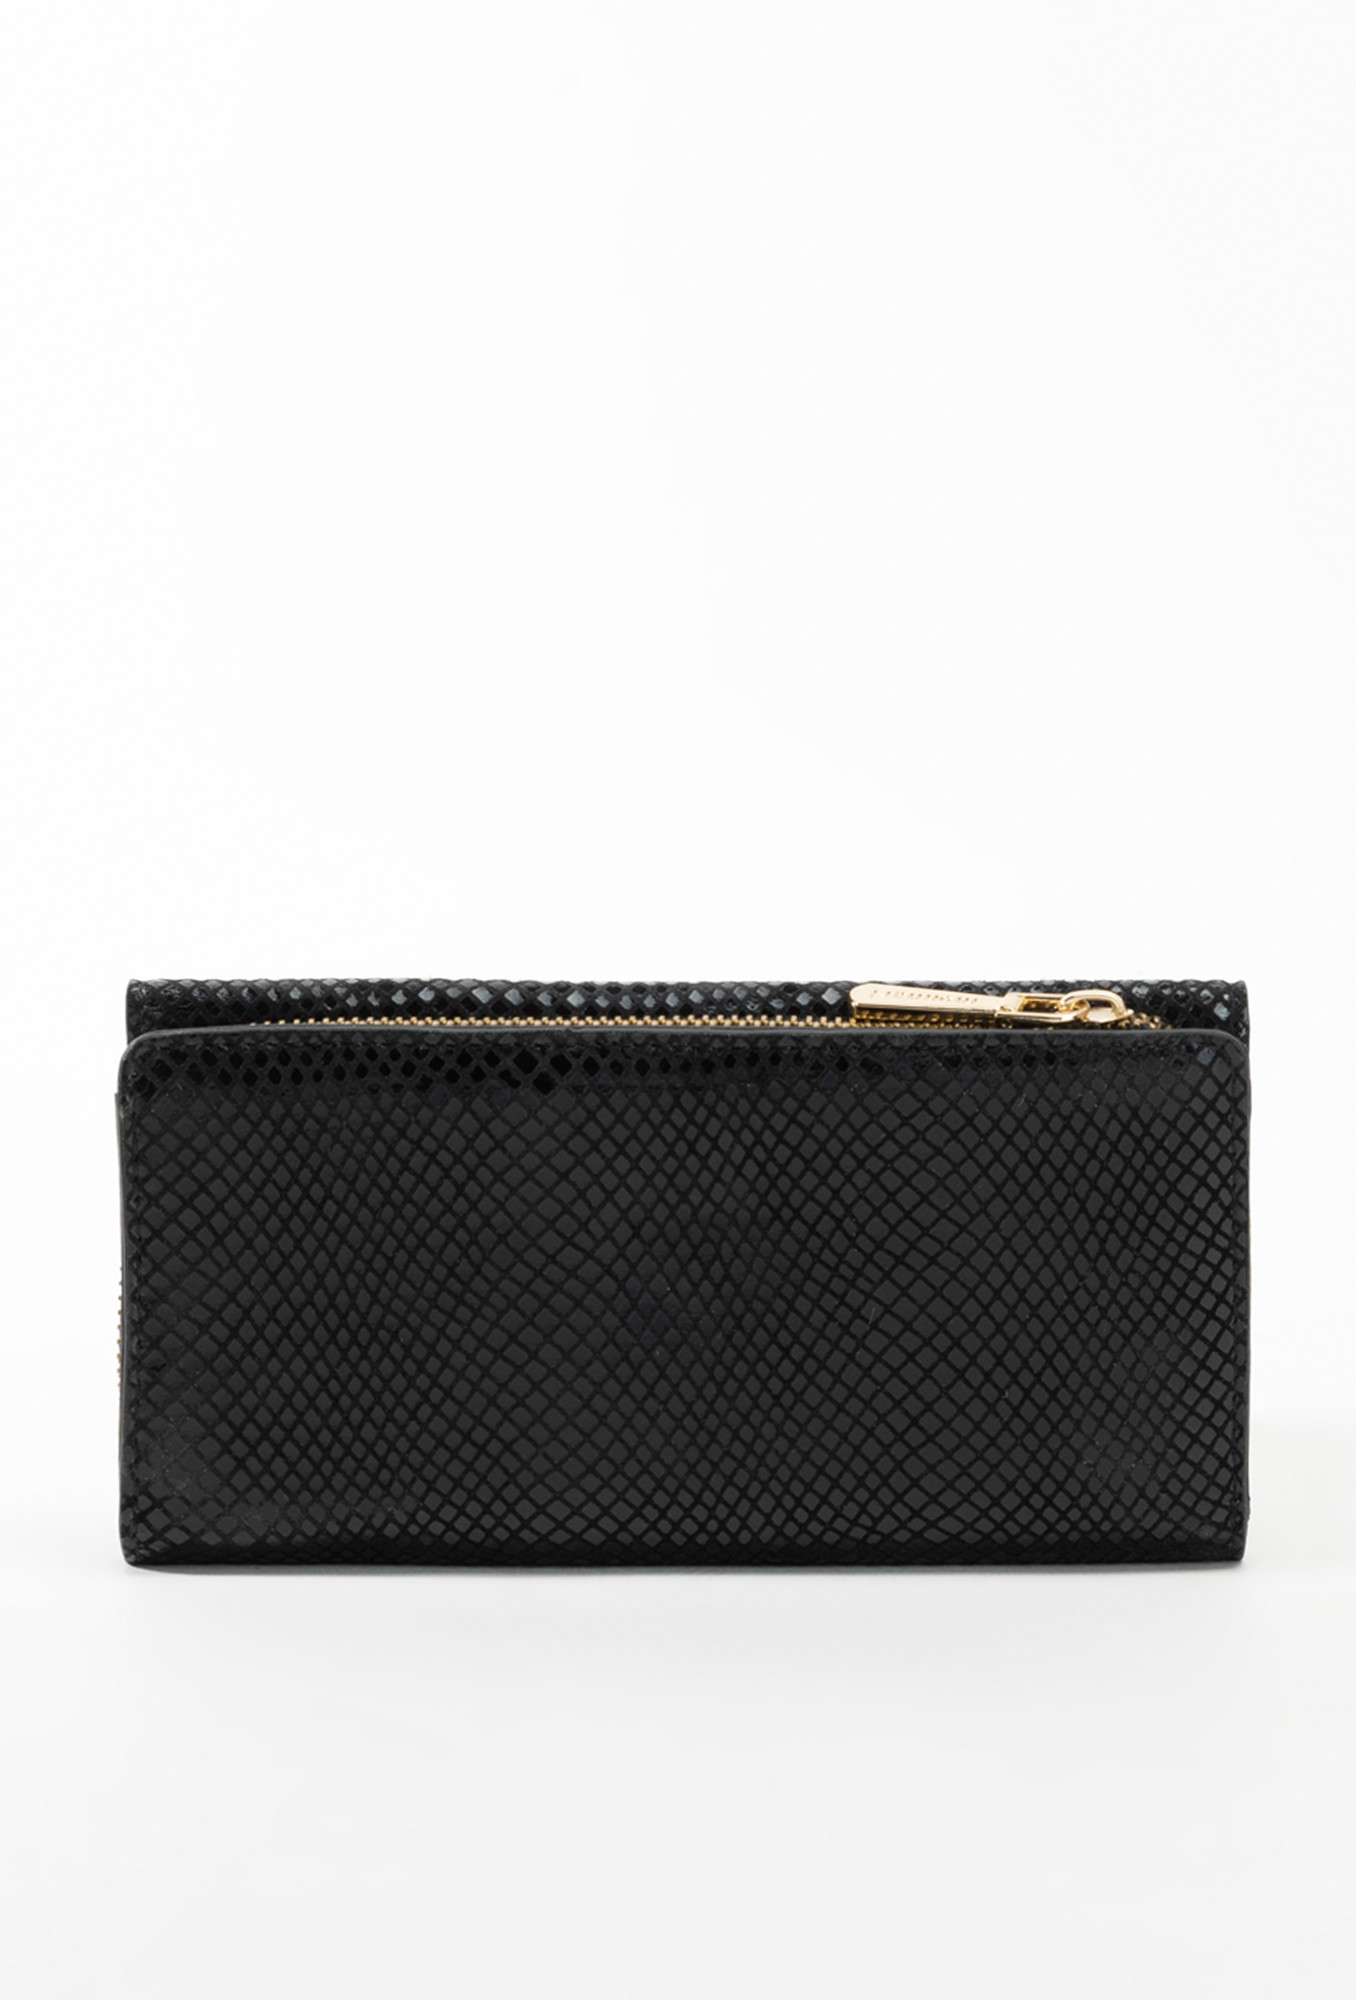 Monnari Peněženky Dámská peněženka s kapsou na zadní straně Multi Black OS